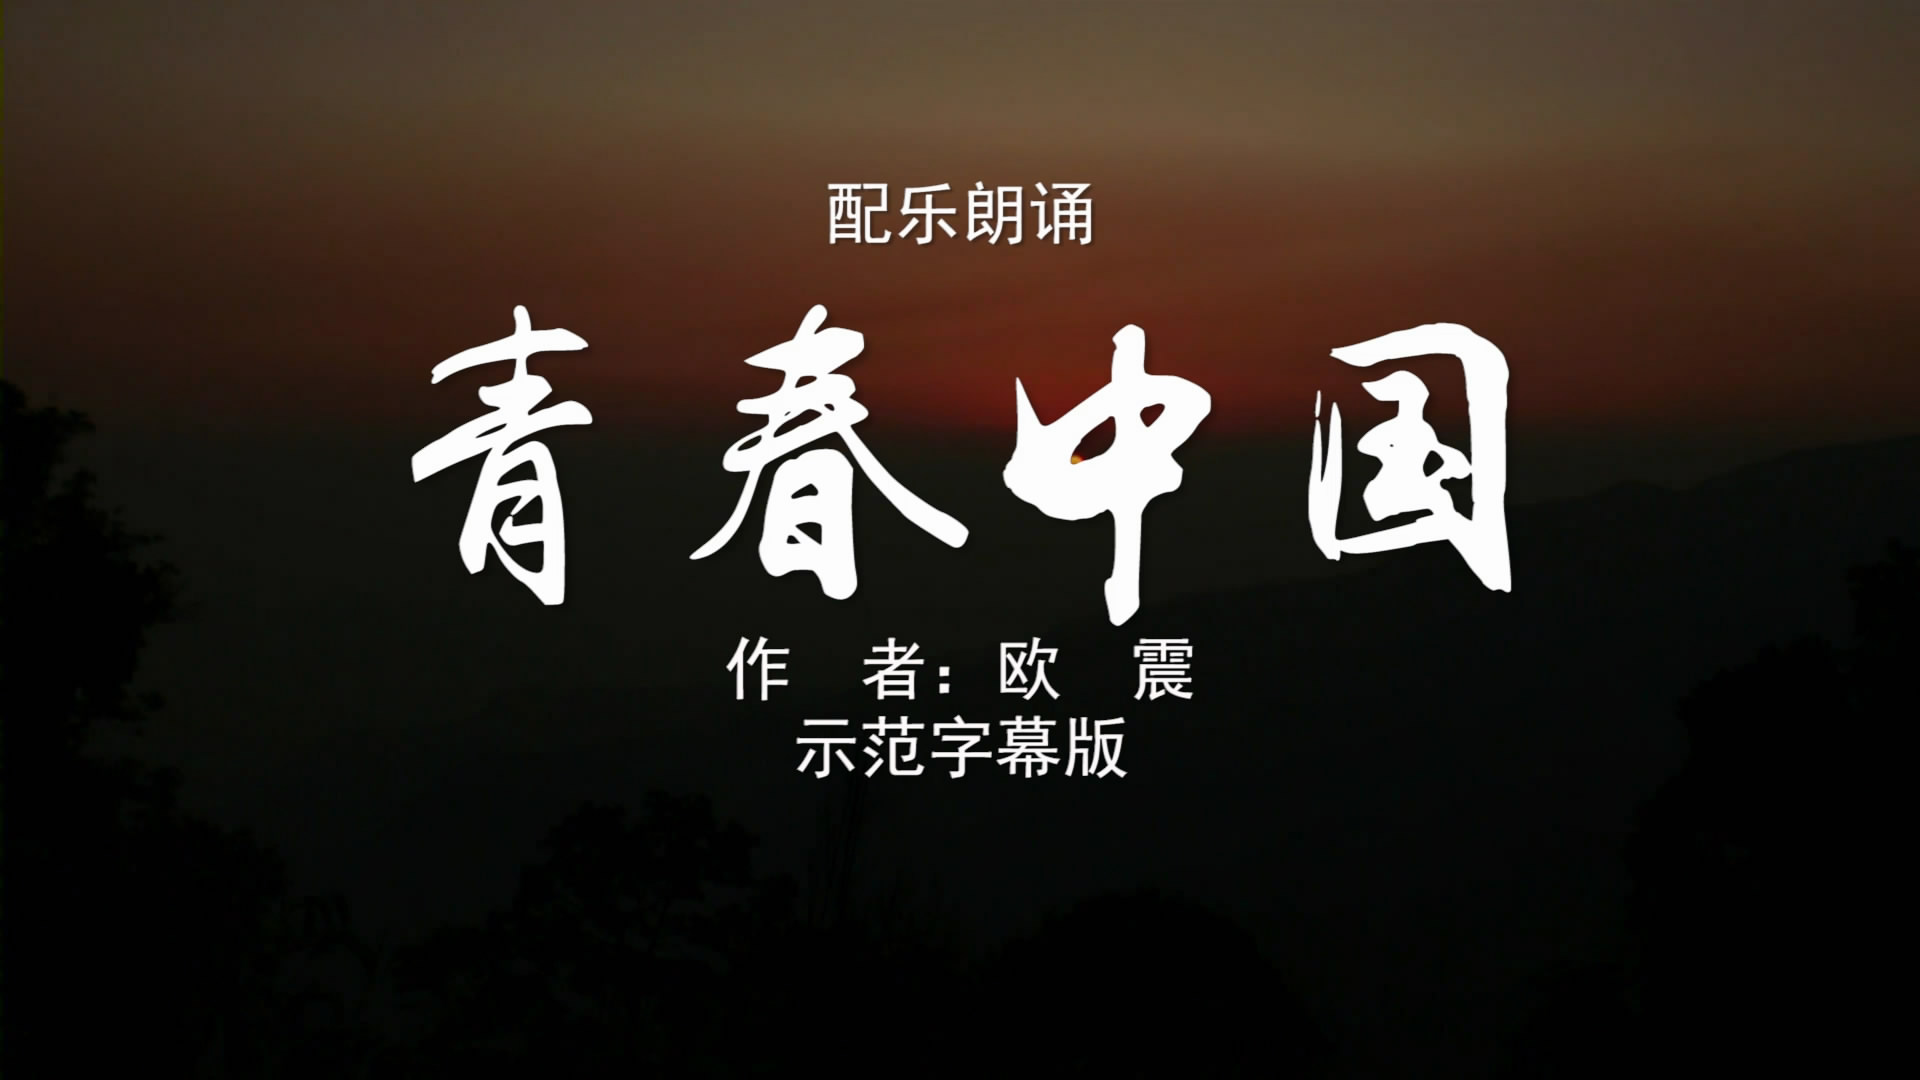 青春中国-双人版 诗歌朗诵配乐伴奏舞台演出LED背景大屏幕视频素材TV